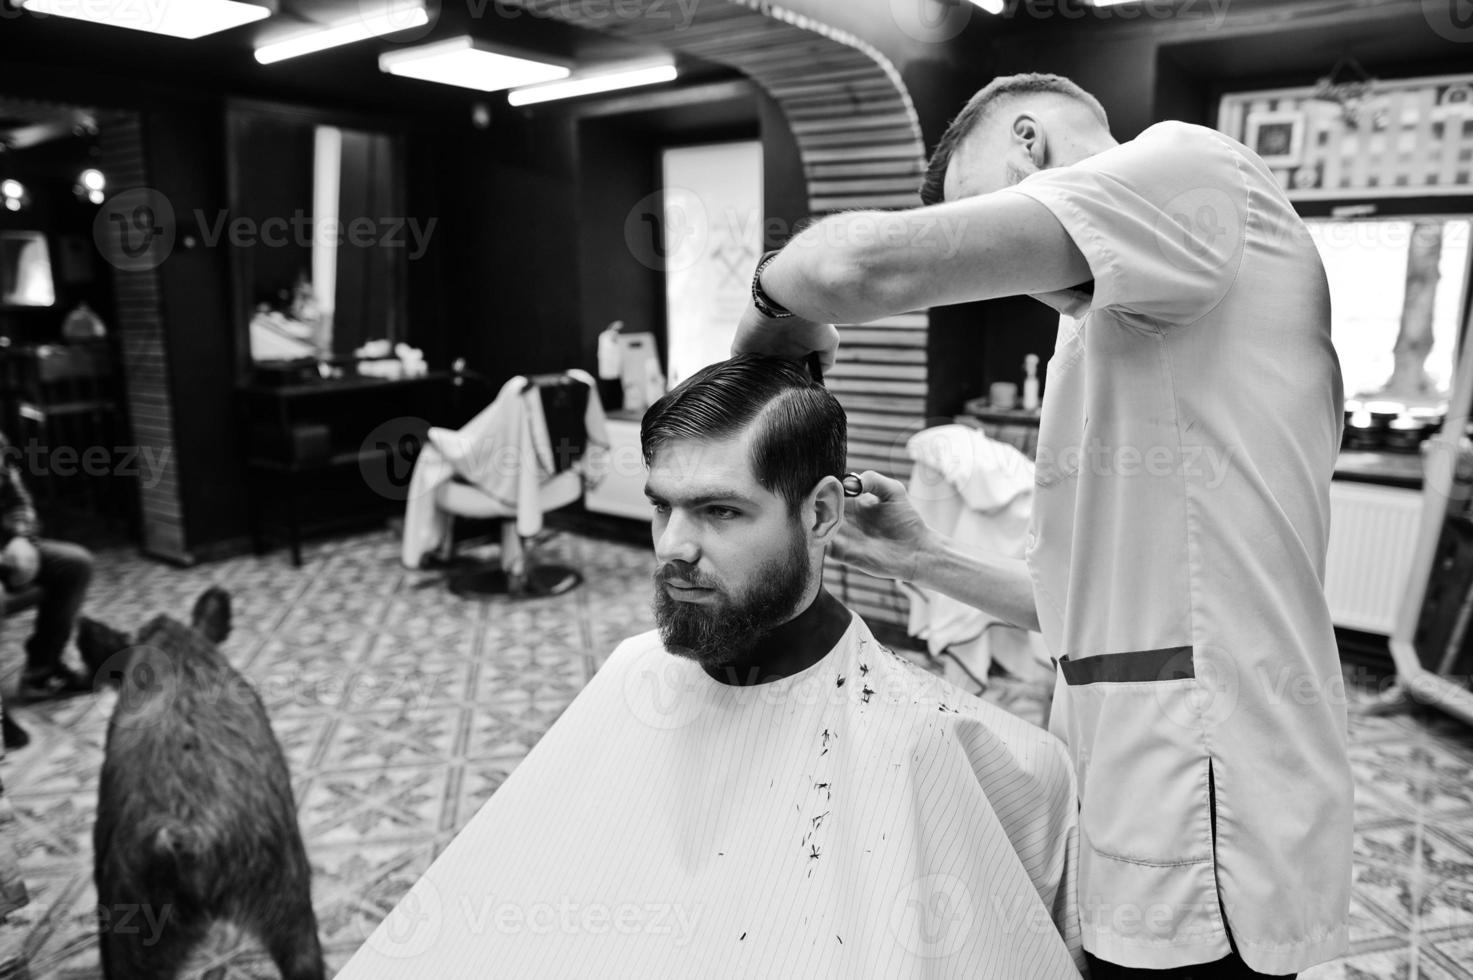 jovem barbudo cortando o cabelo pelo cabeleireiro enquanto está sentado na cadeira na barbearia. alma de barbeiro. foto